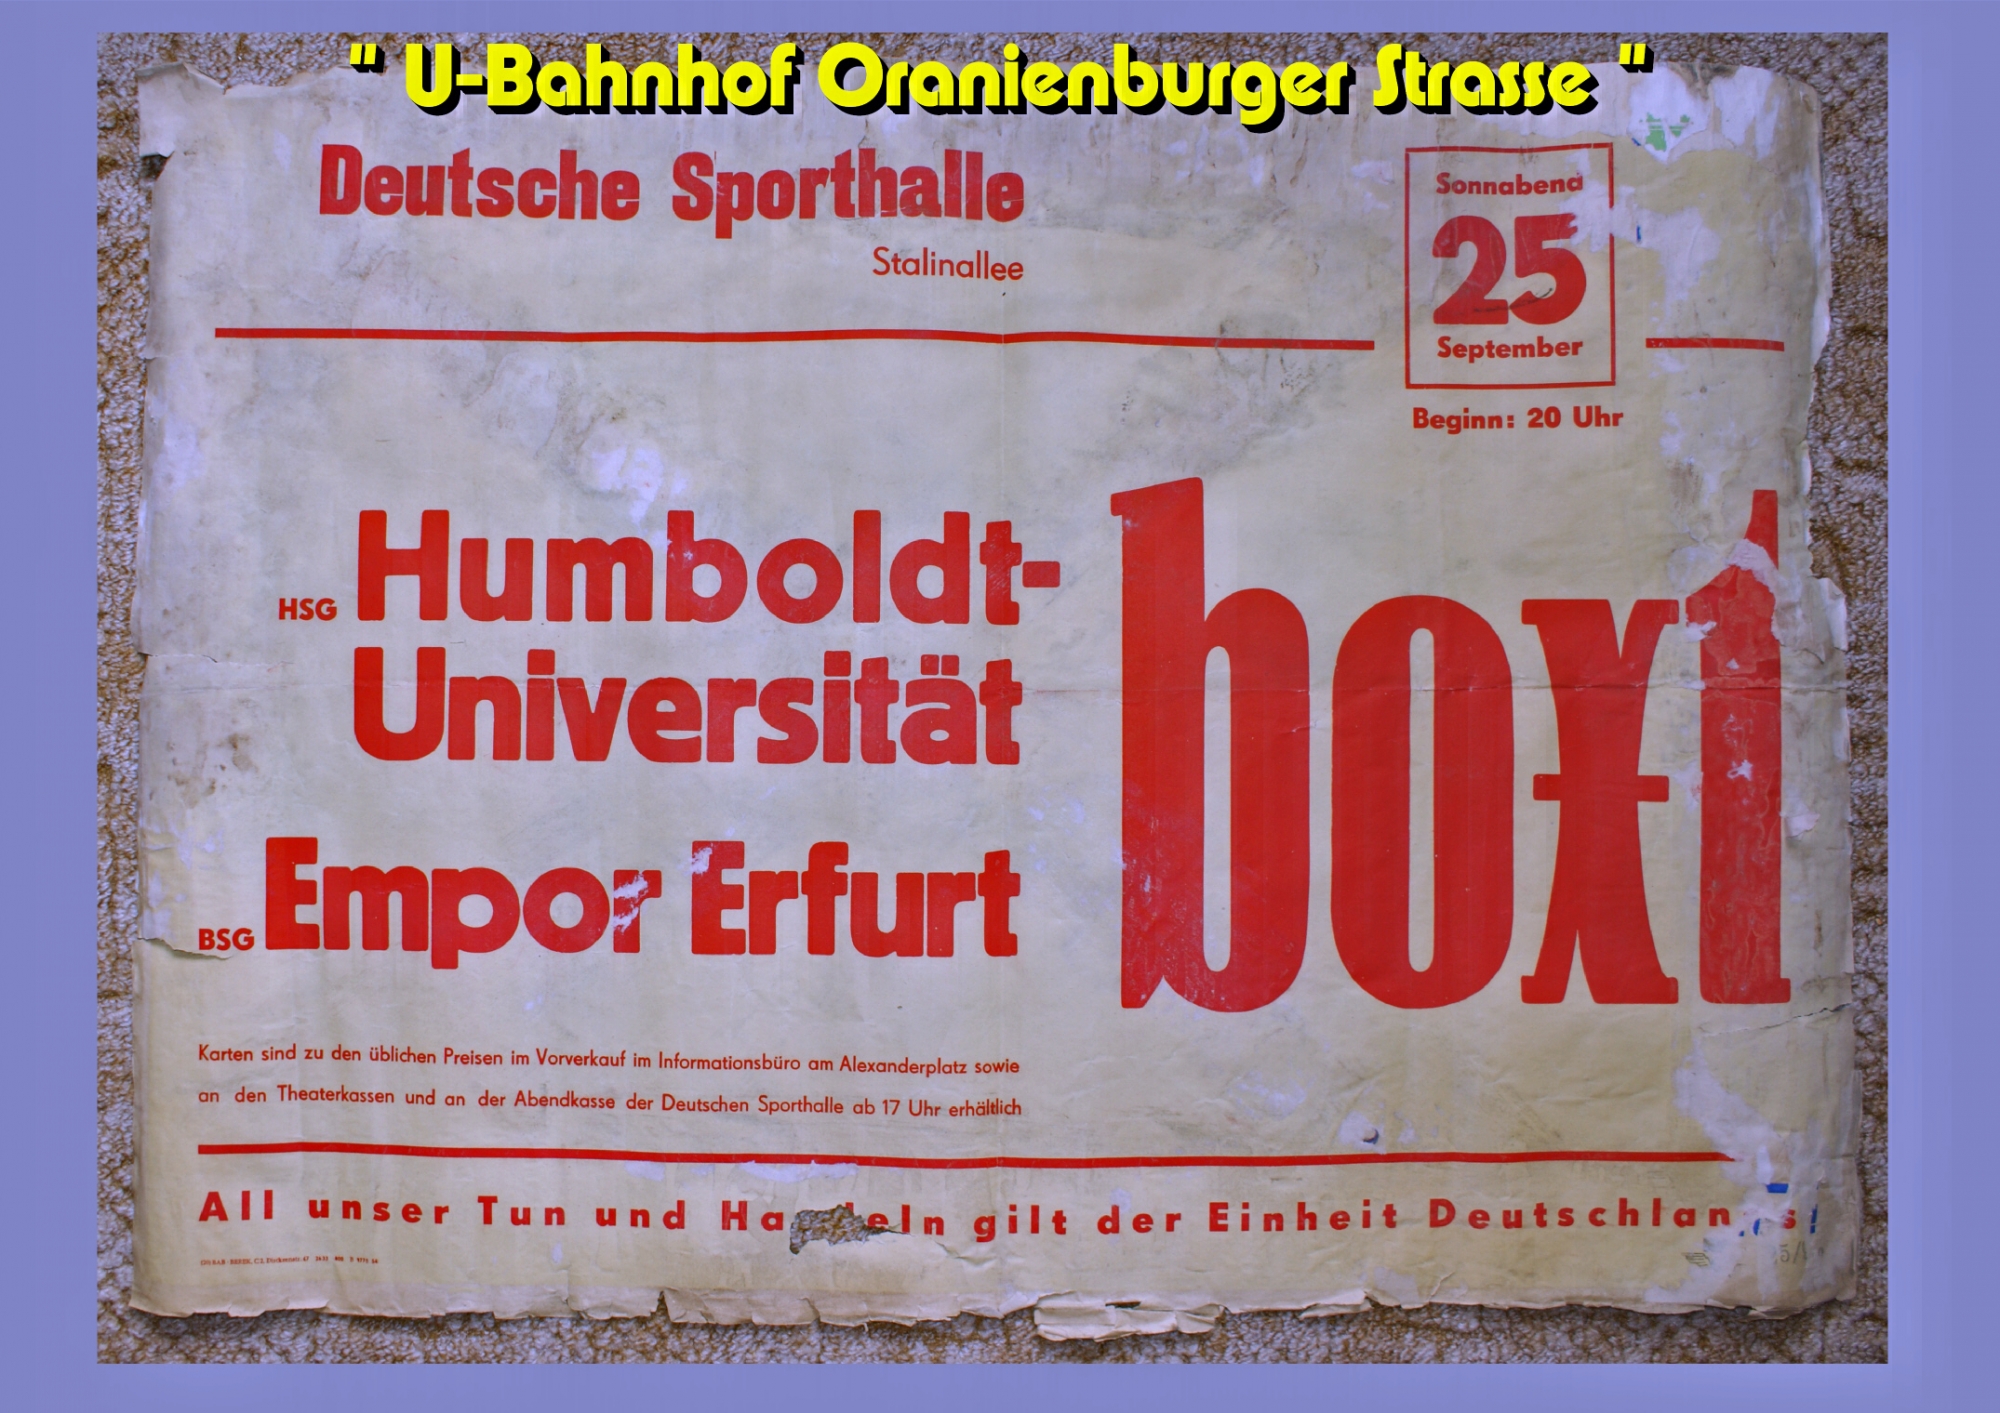 Humbolt UNI und Empor Erfurt Boxen..